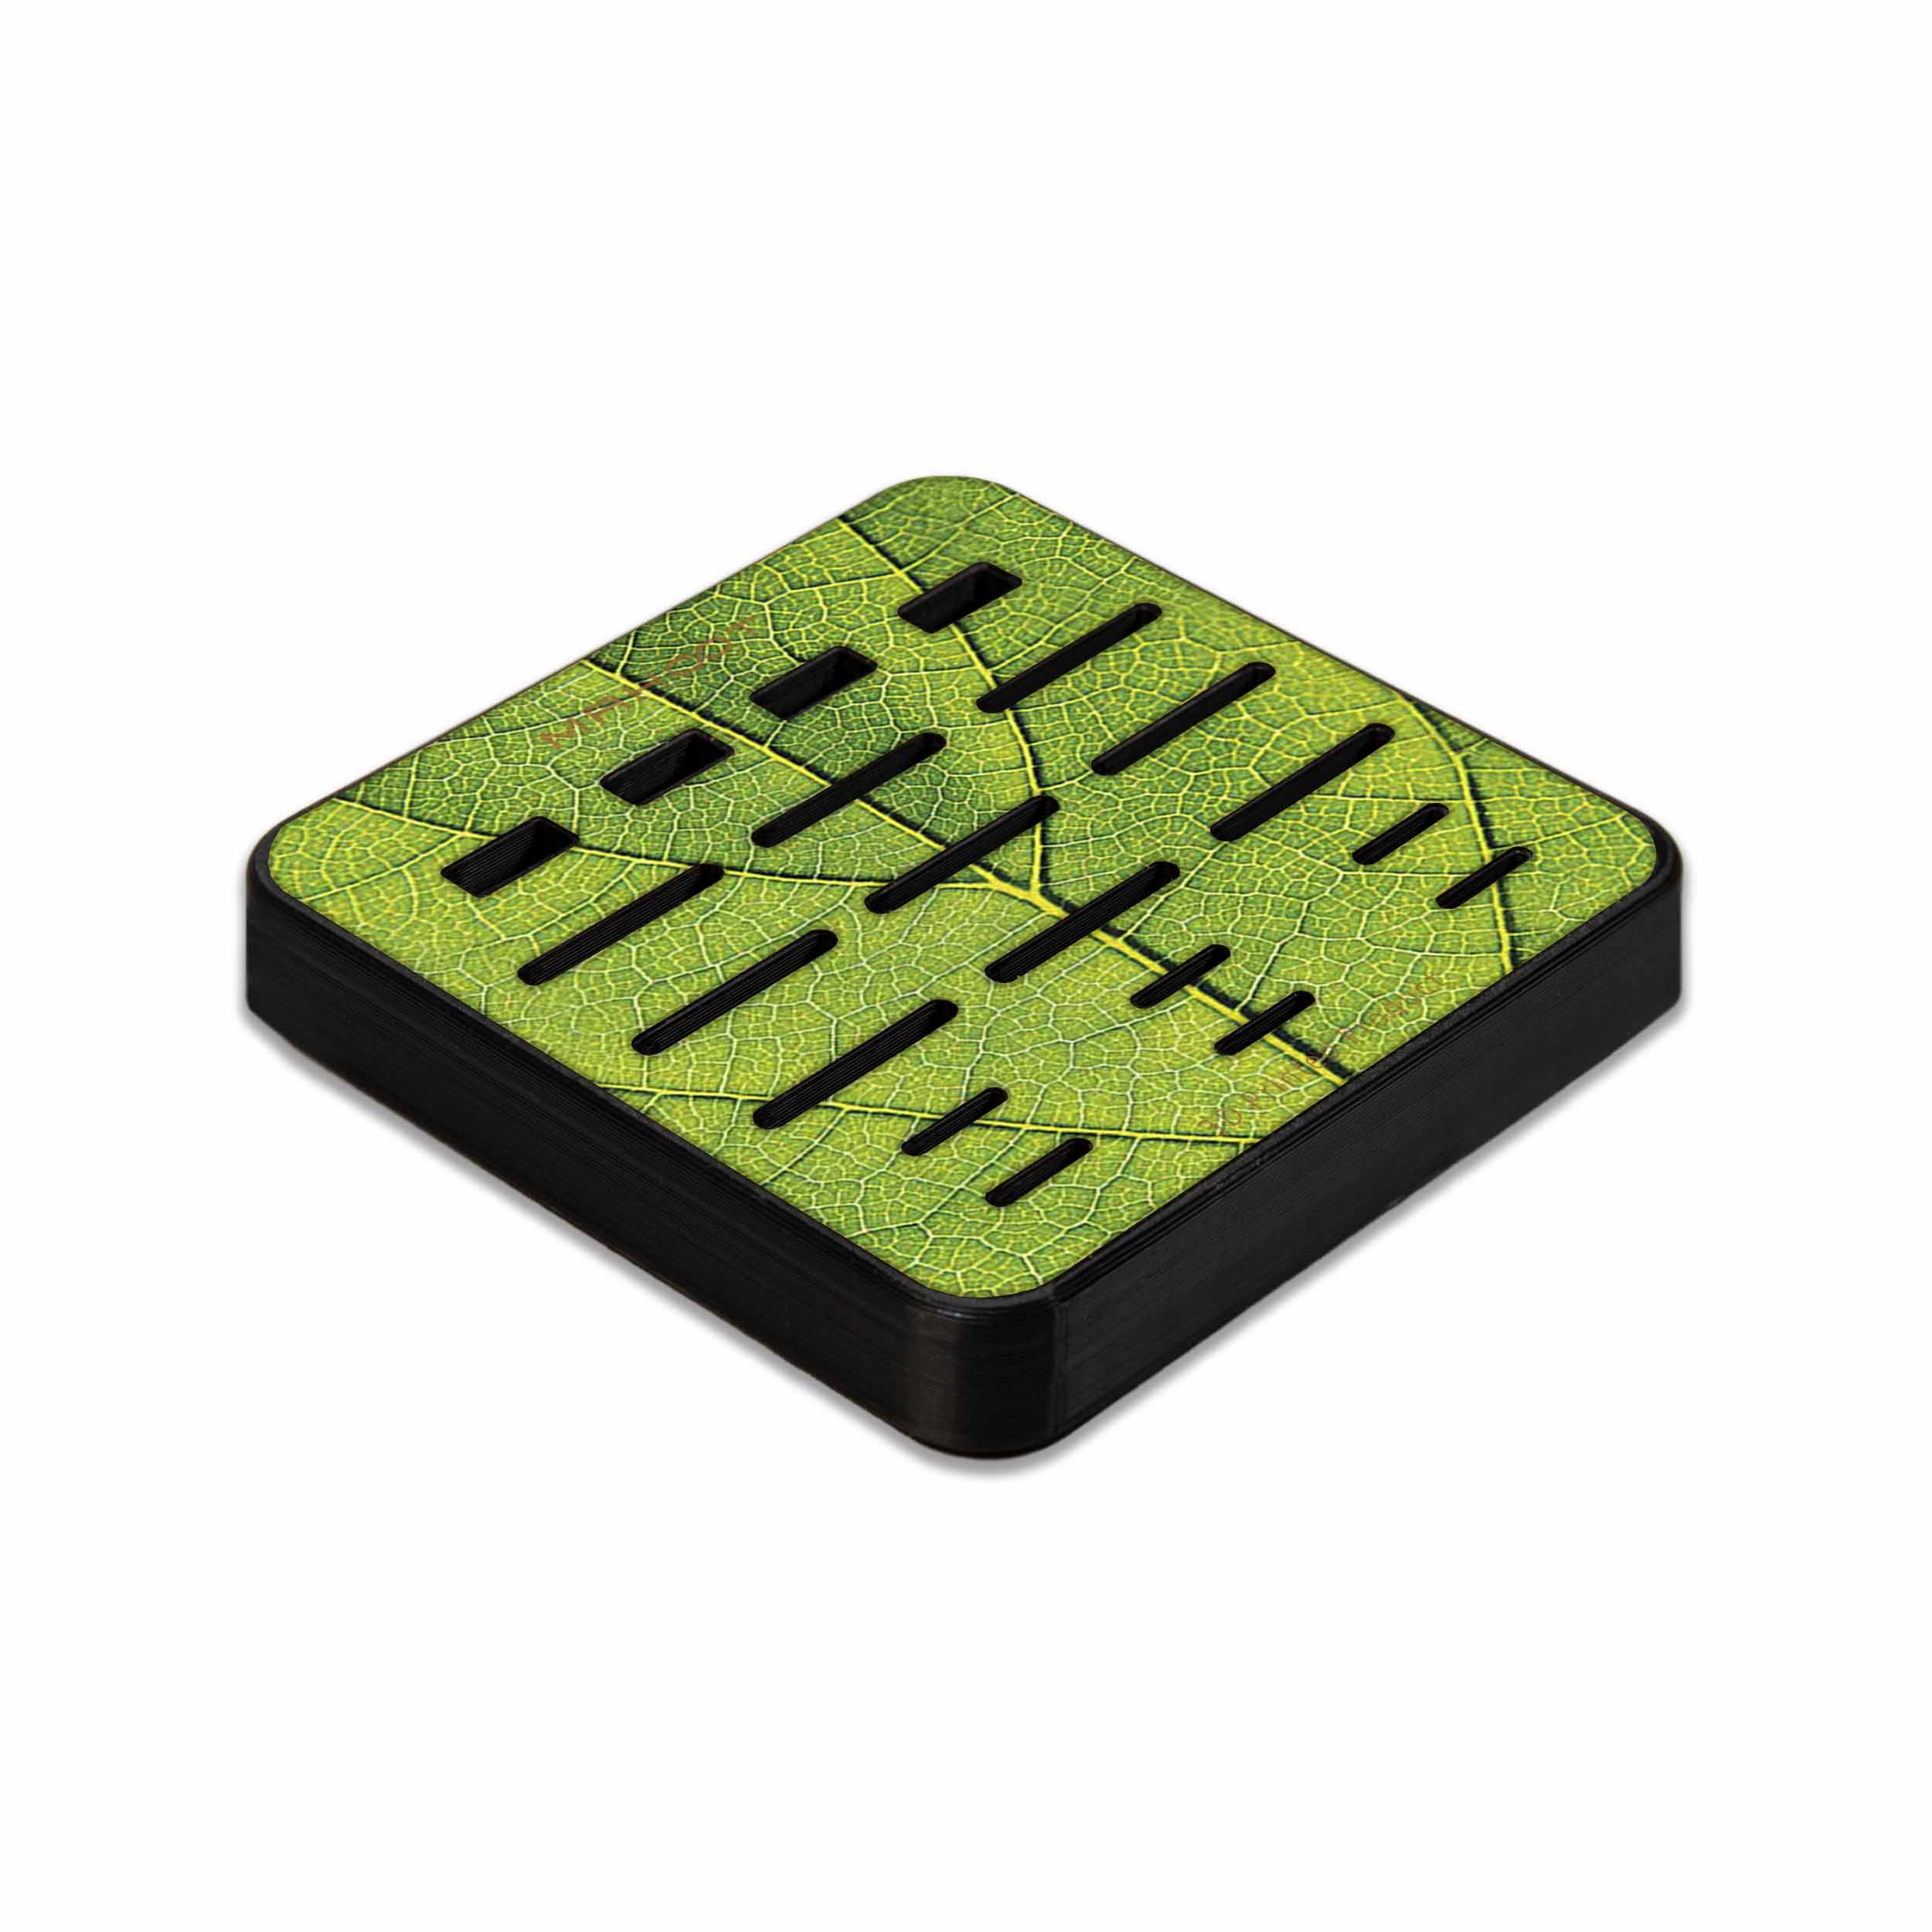 نظم دهنده فضای ذخیره سازی ماهوت مدل Leaf-Texture-496 مناسب برای فلش و مموری کارت